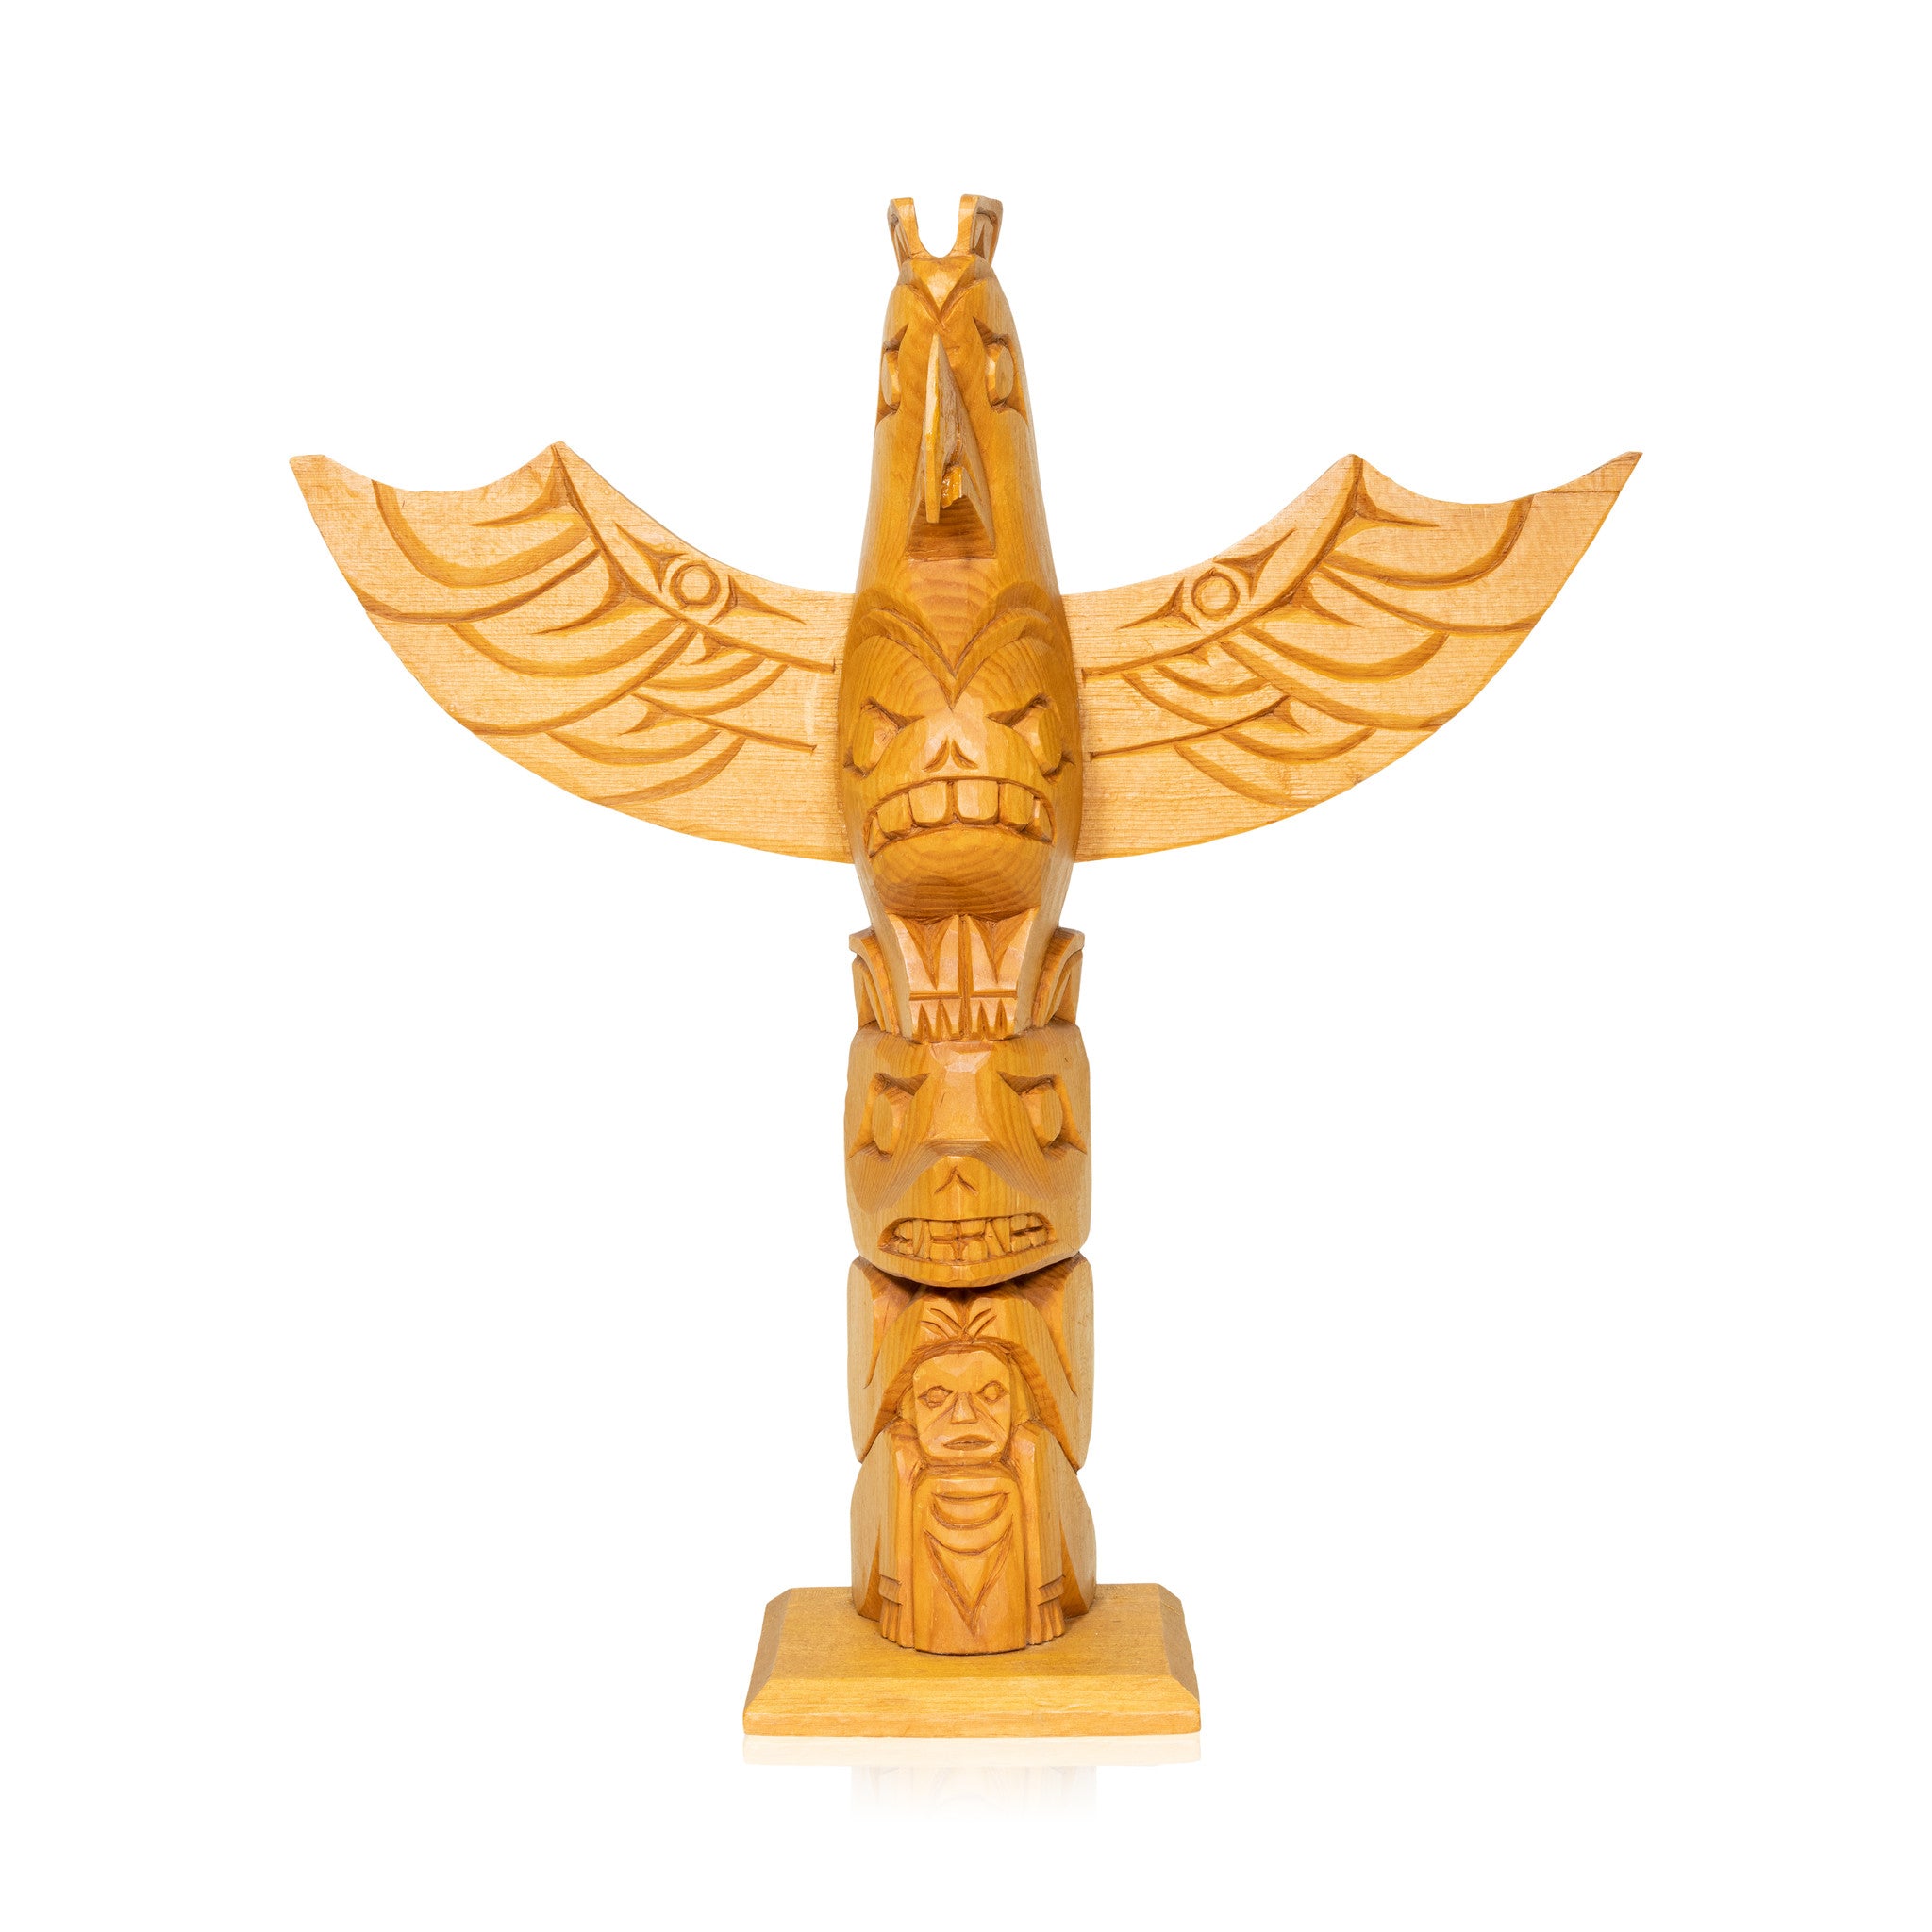 Ditidaht Thunderbird Totem by Joe Shaw, Native, Carving, Totem Pole